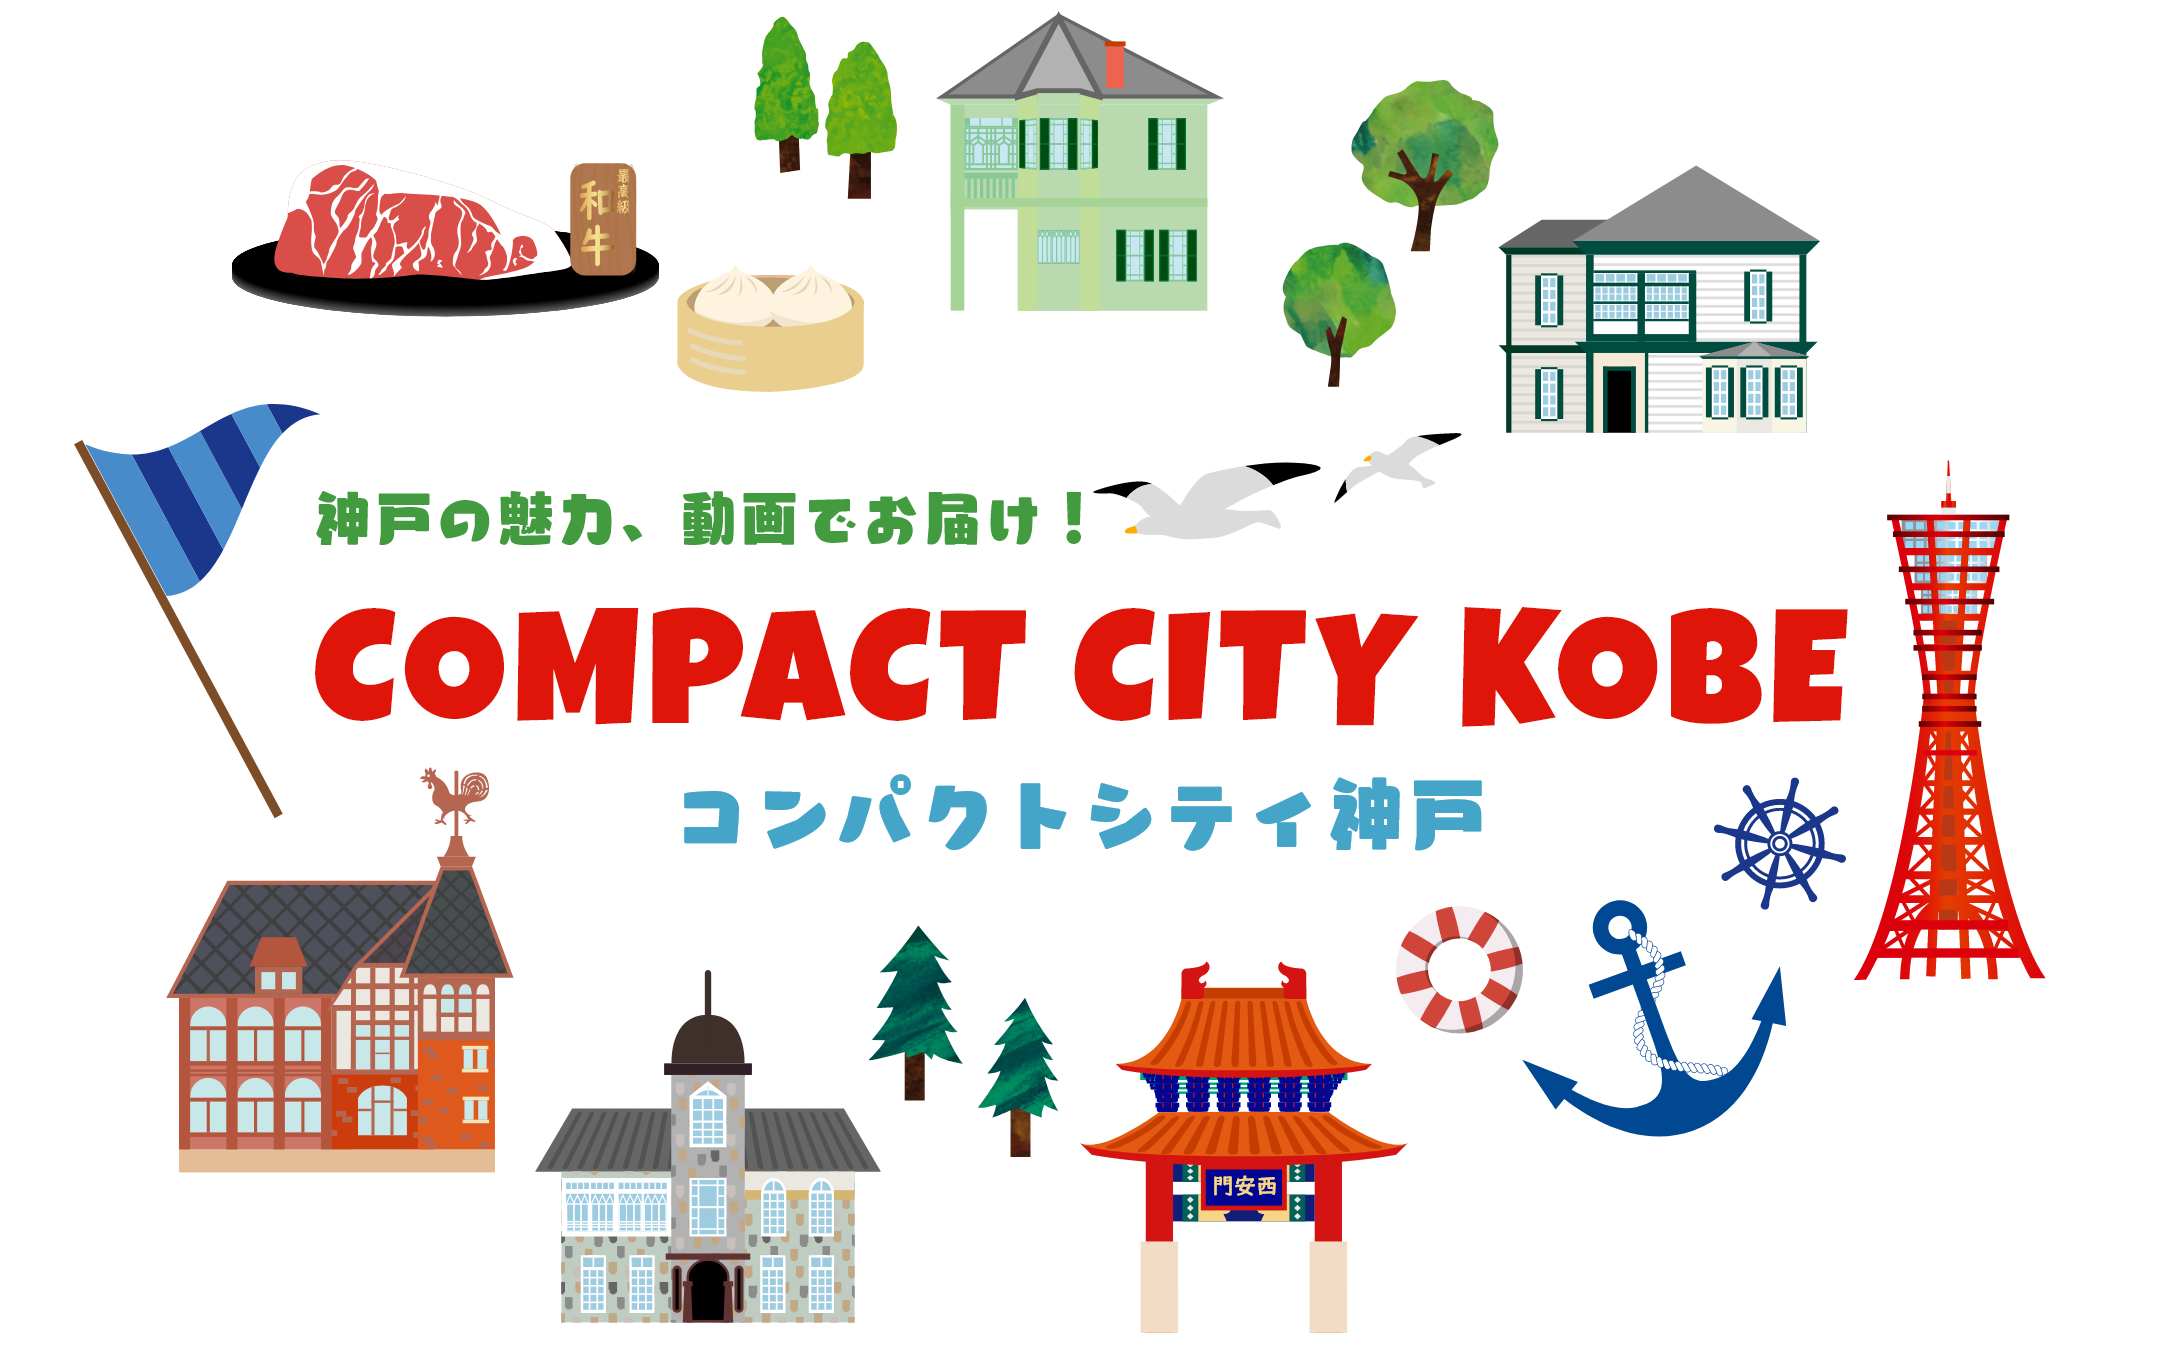 神戸の魅力、動画でお届け！「コンパクトシティ神戸」COMPACT CITY KOBE